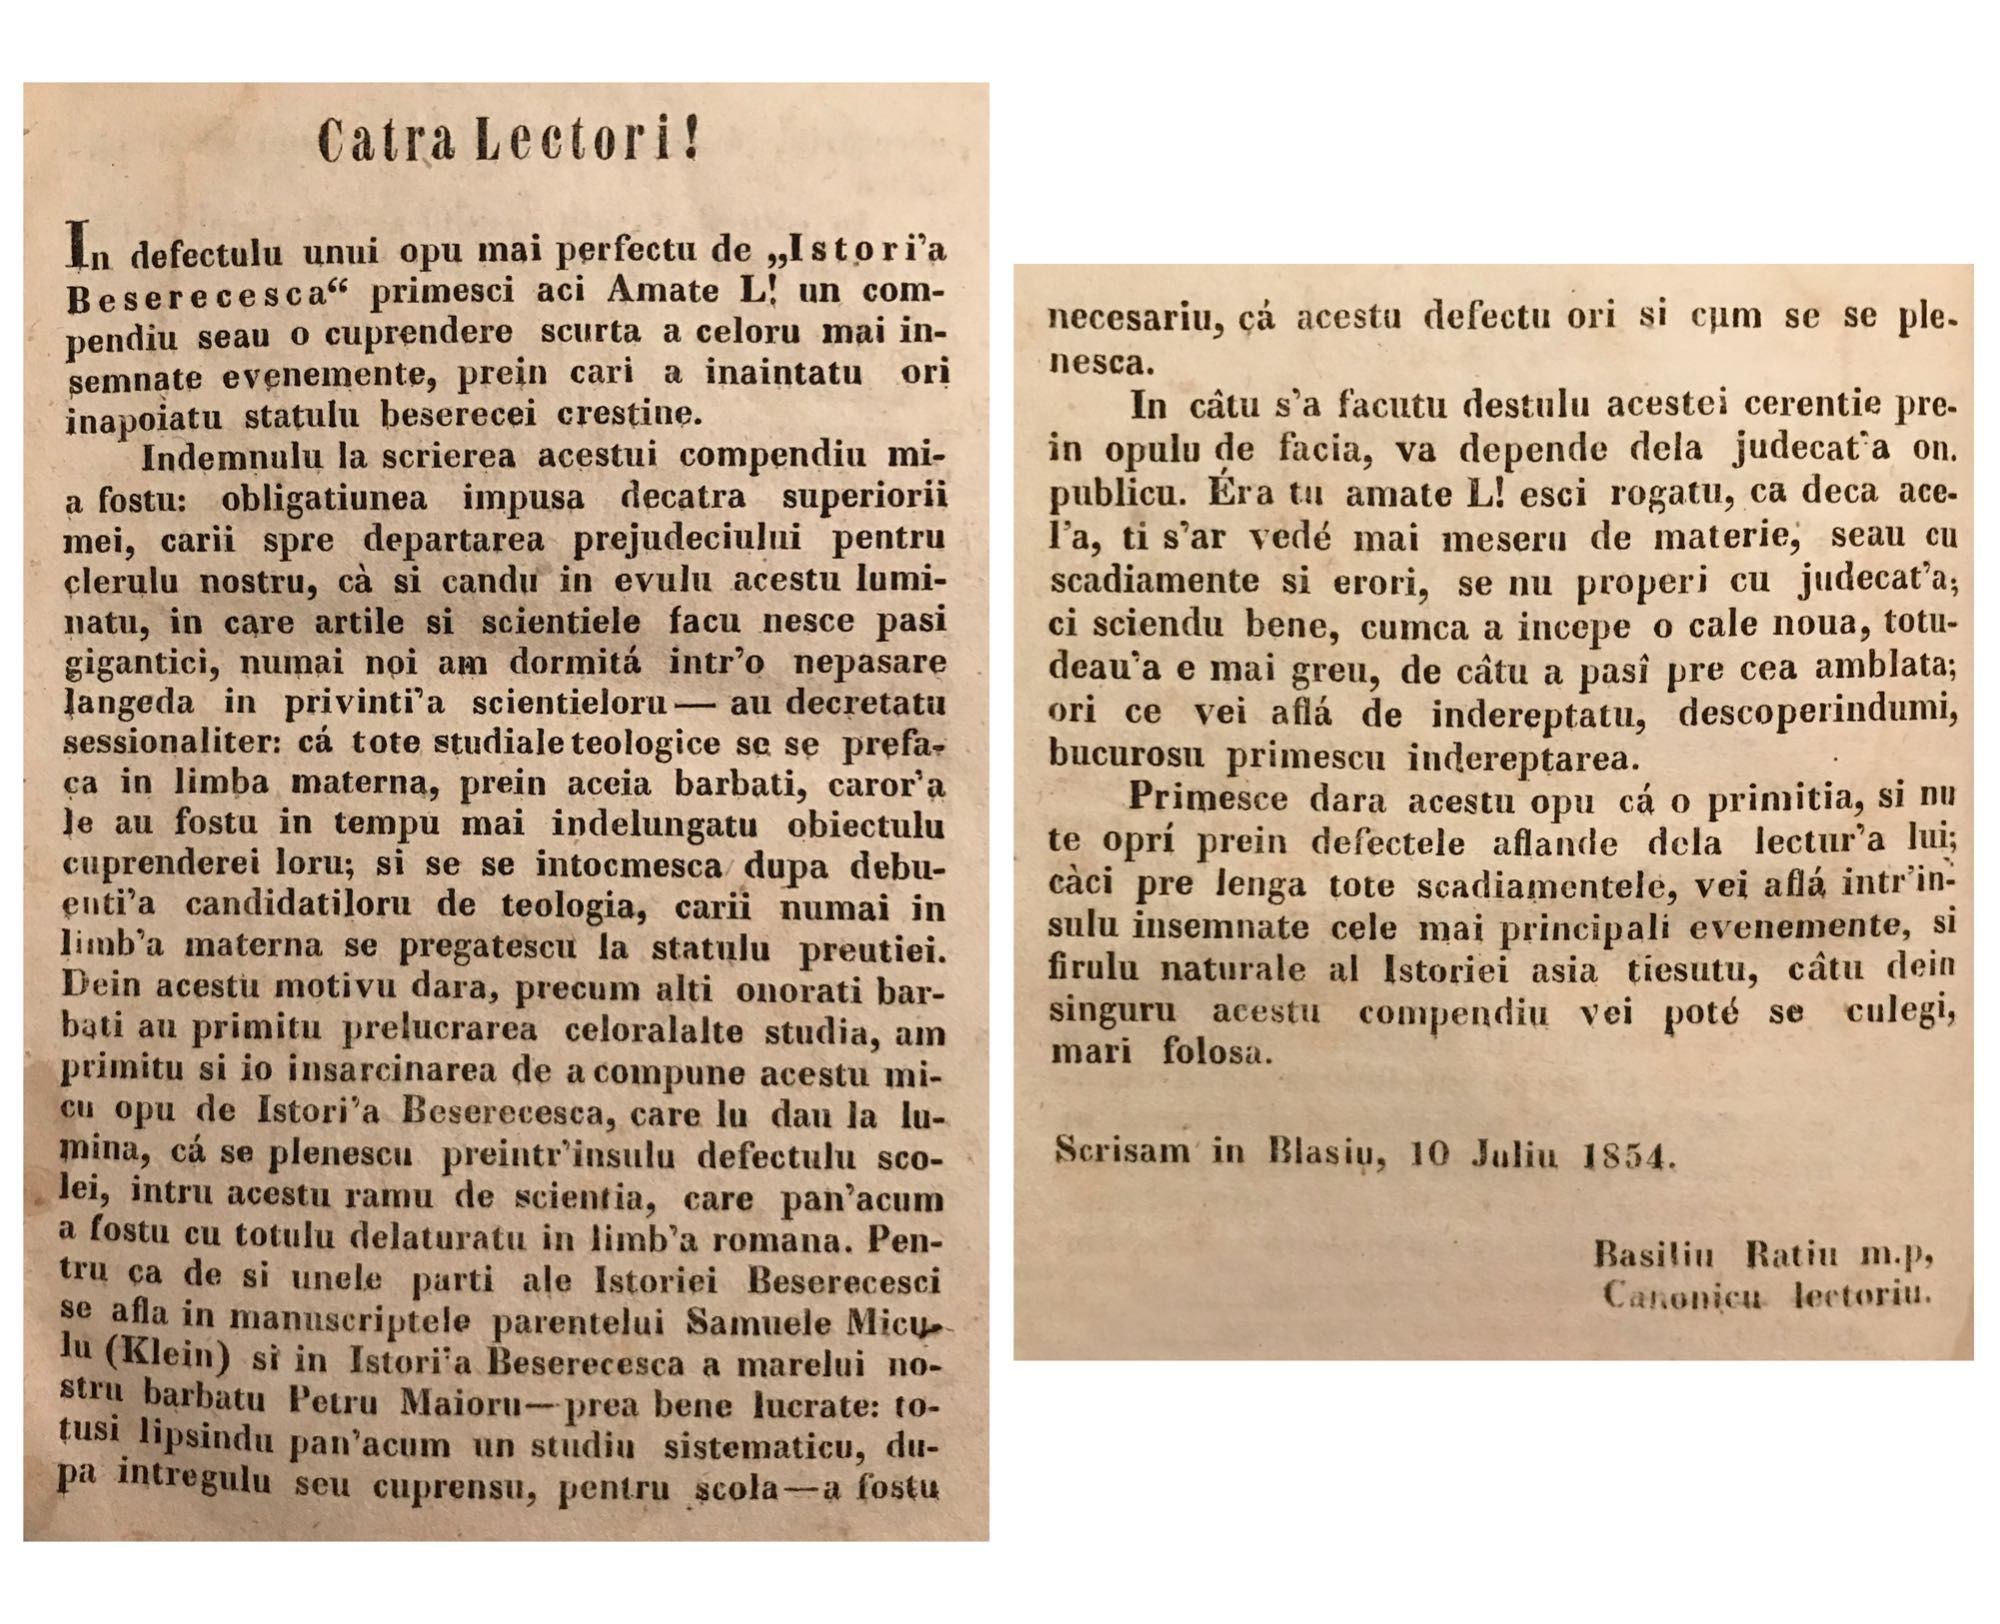 1854 Istoria Bisericeasca, Beserecesca, Basiliu Ratiu